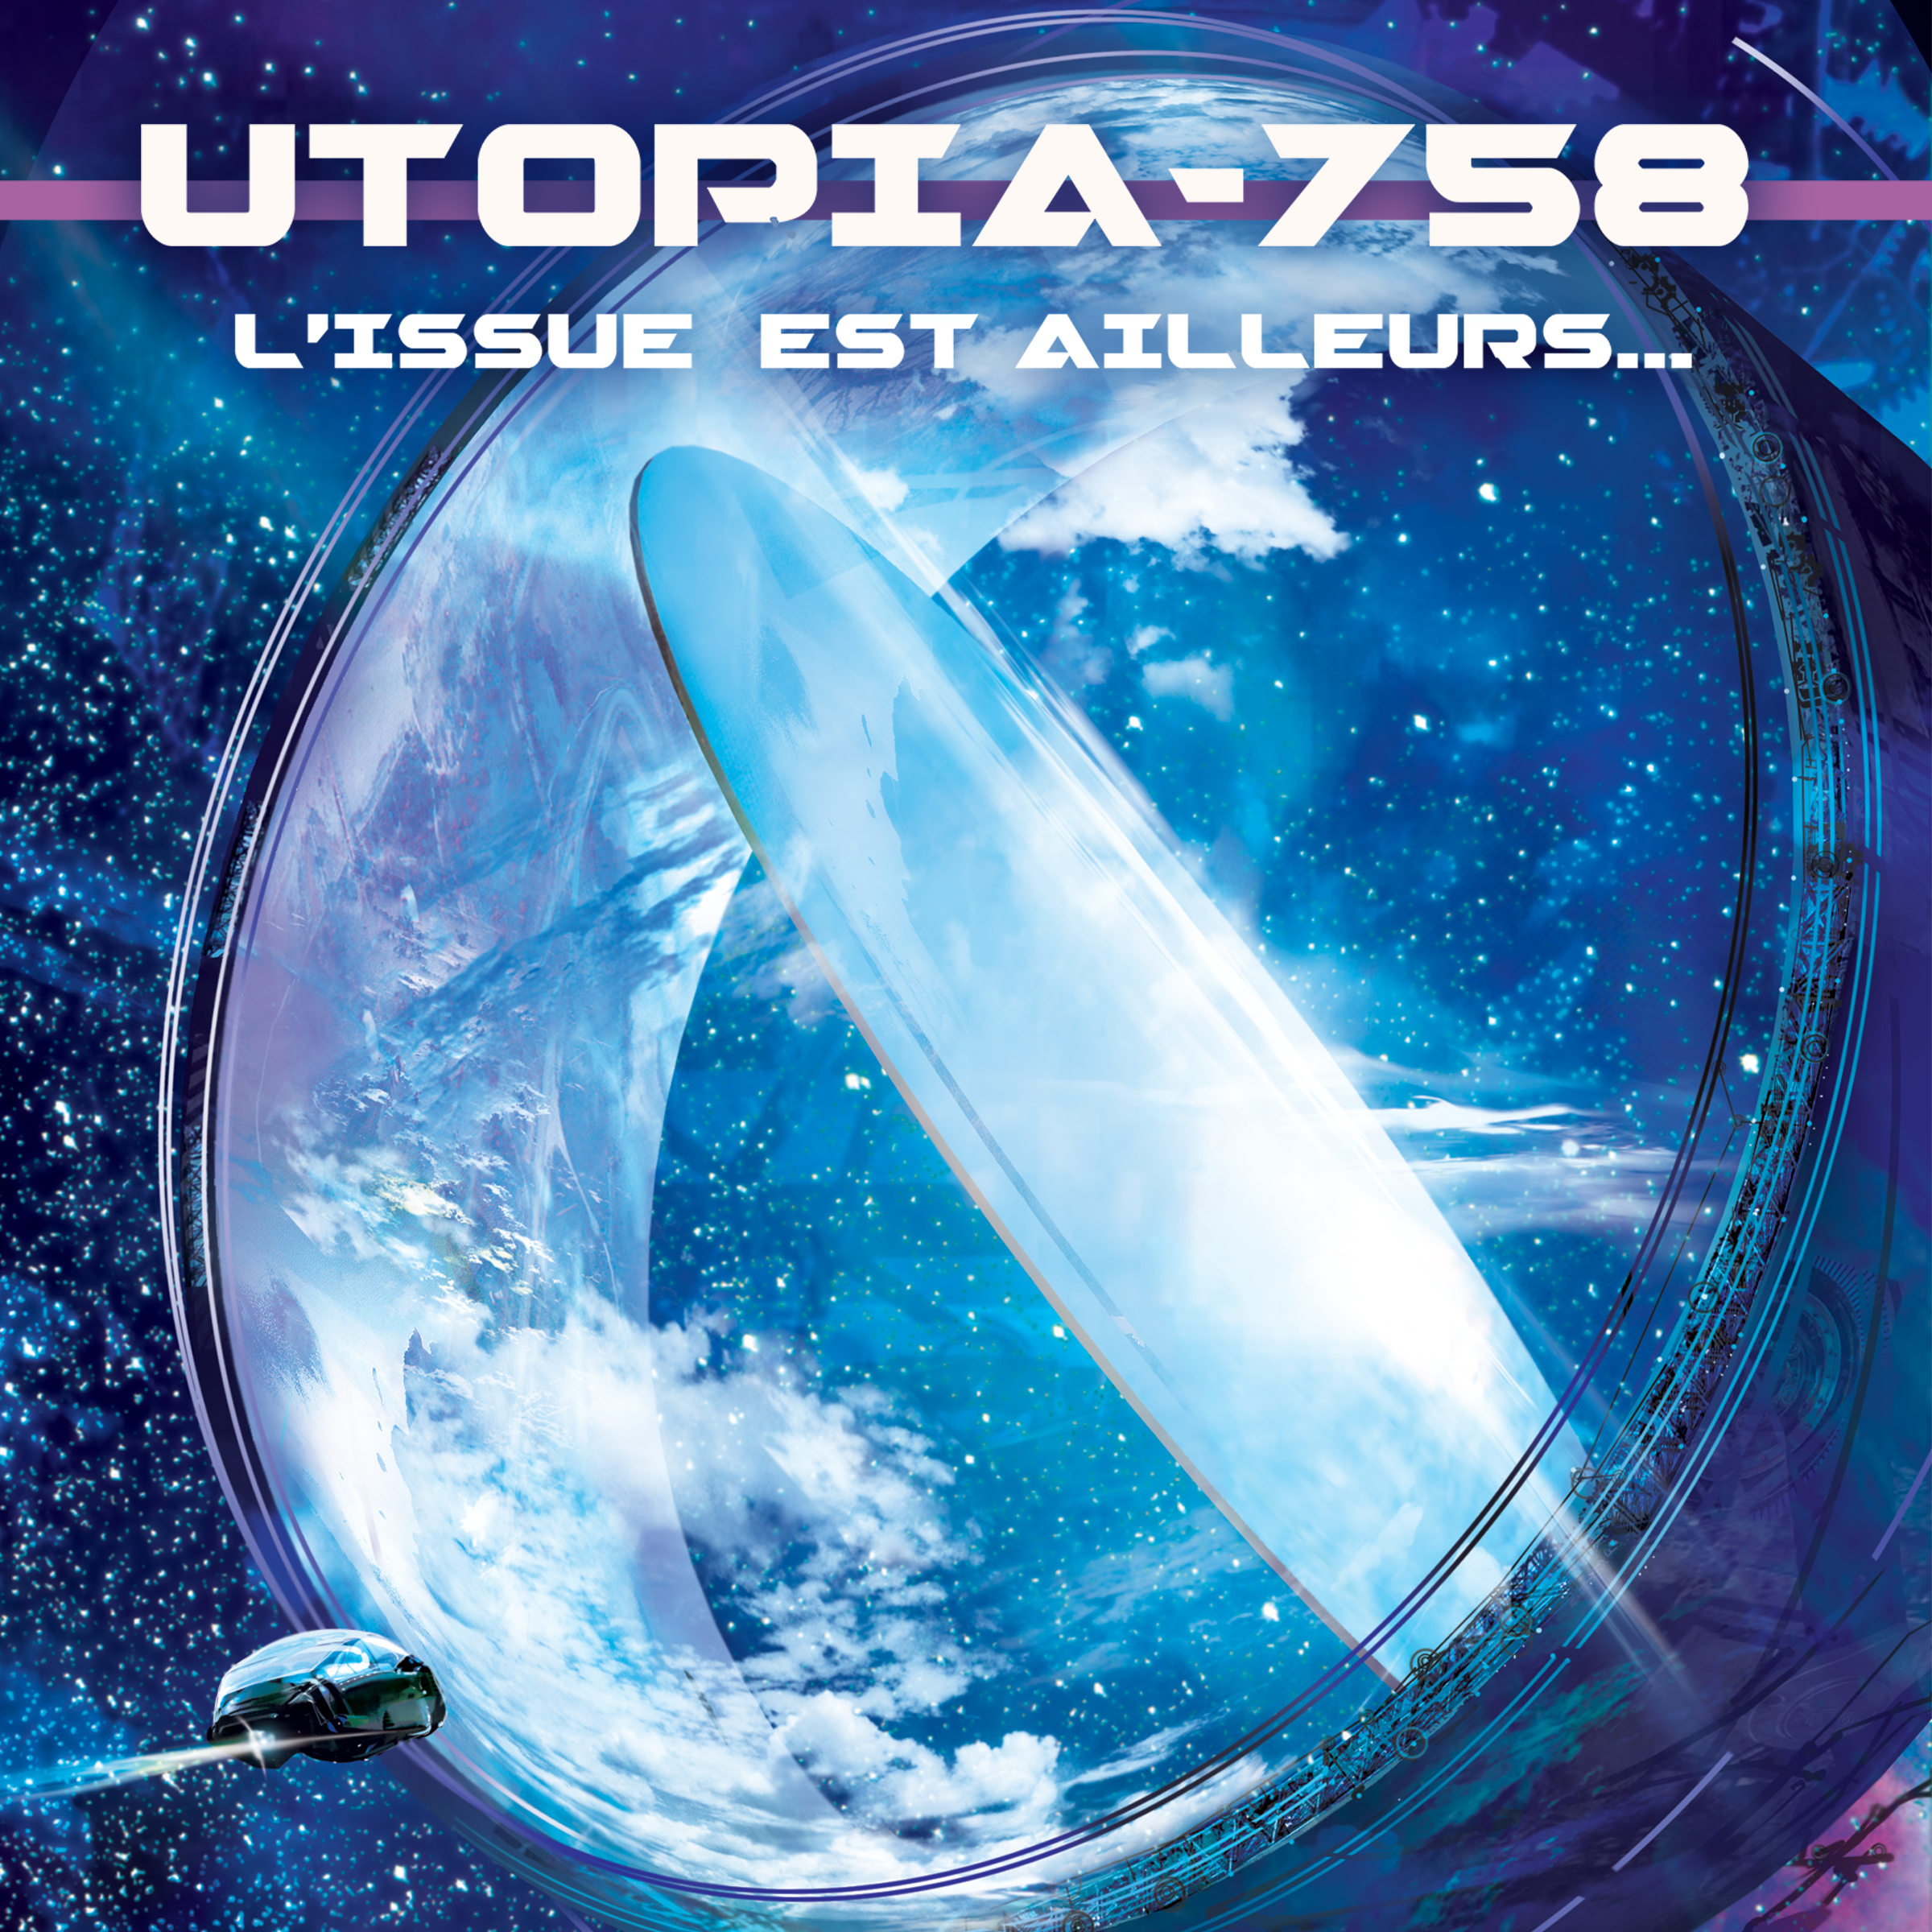 Utopia 758, une série audio par le Collectif IO